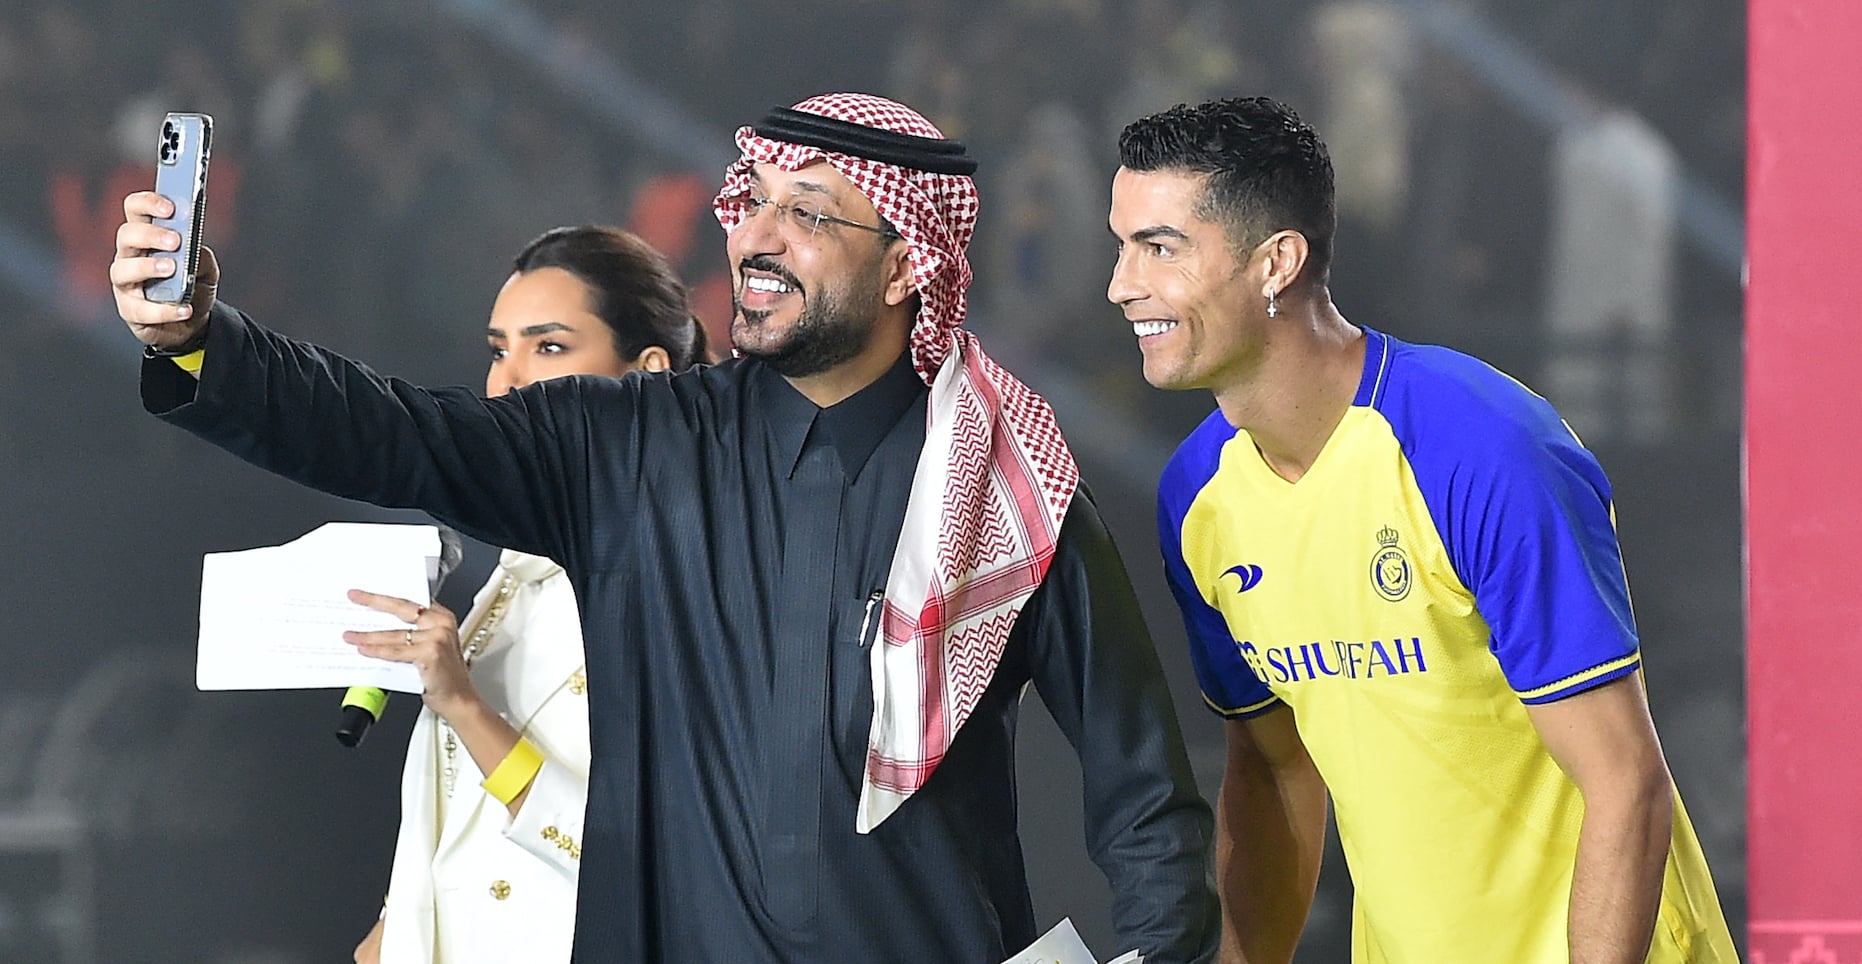 Amnistía pide a Cristiano Ronaldo que hable sobre los derechos humanos en Arabia Saudita